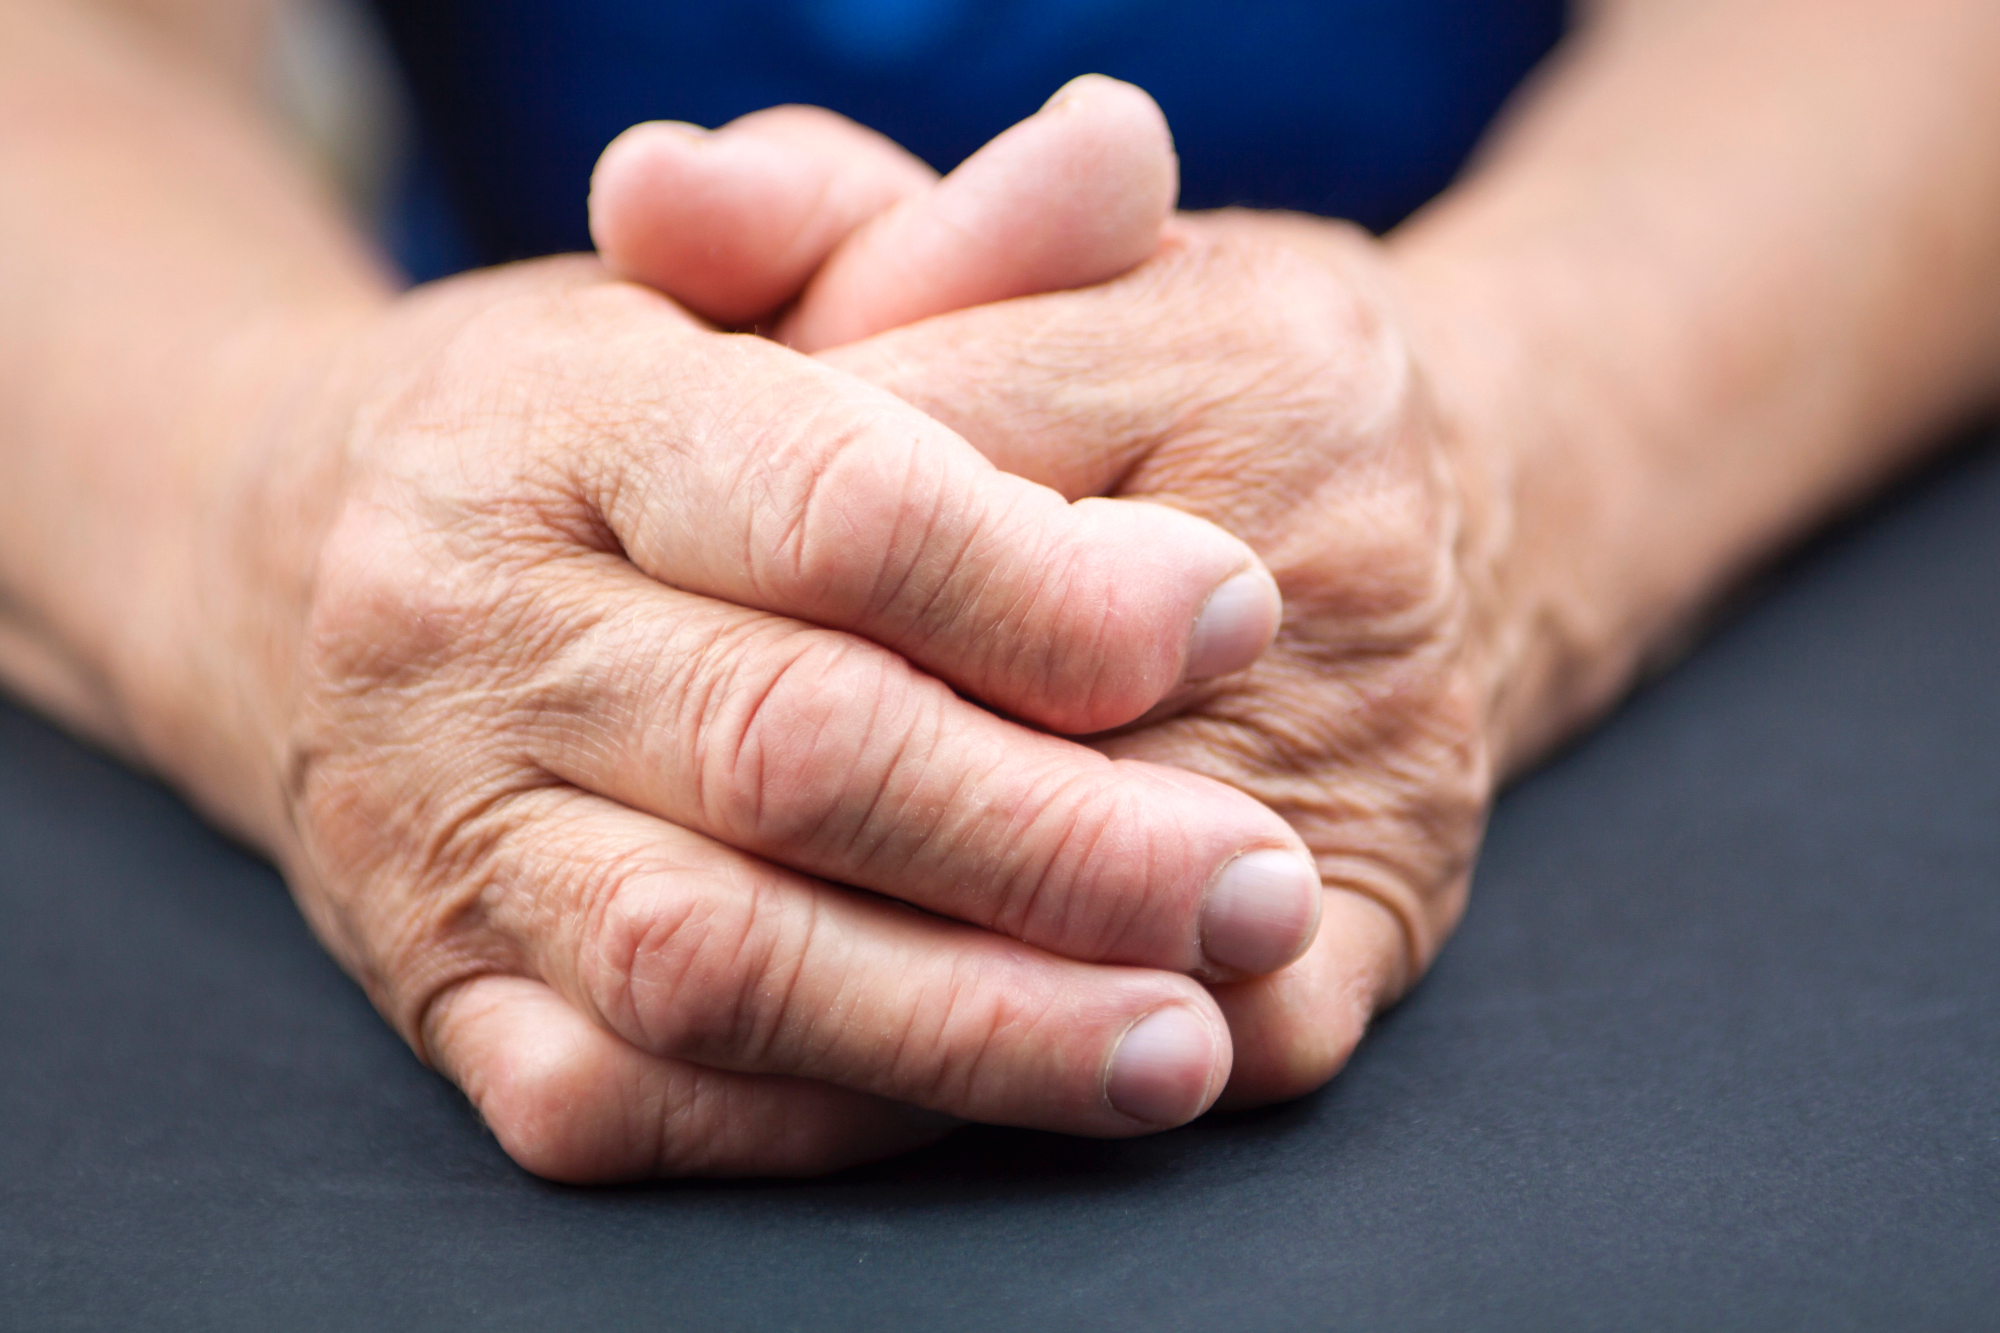 Revmatoidni artritis se večinoma pojavi pri ženskah